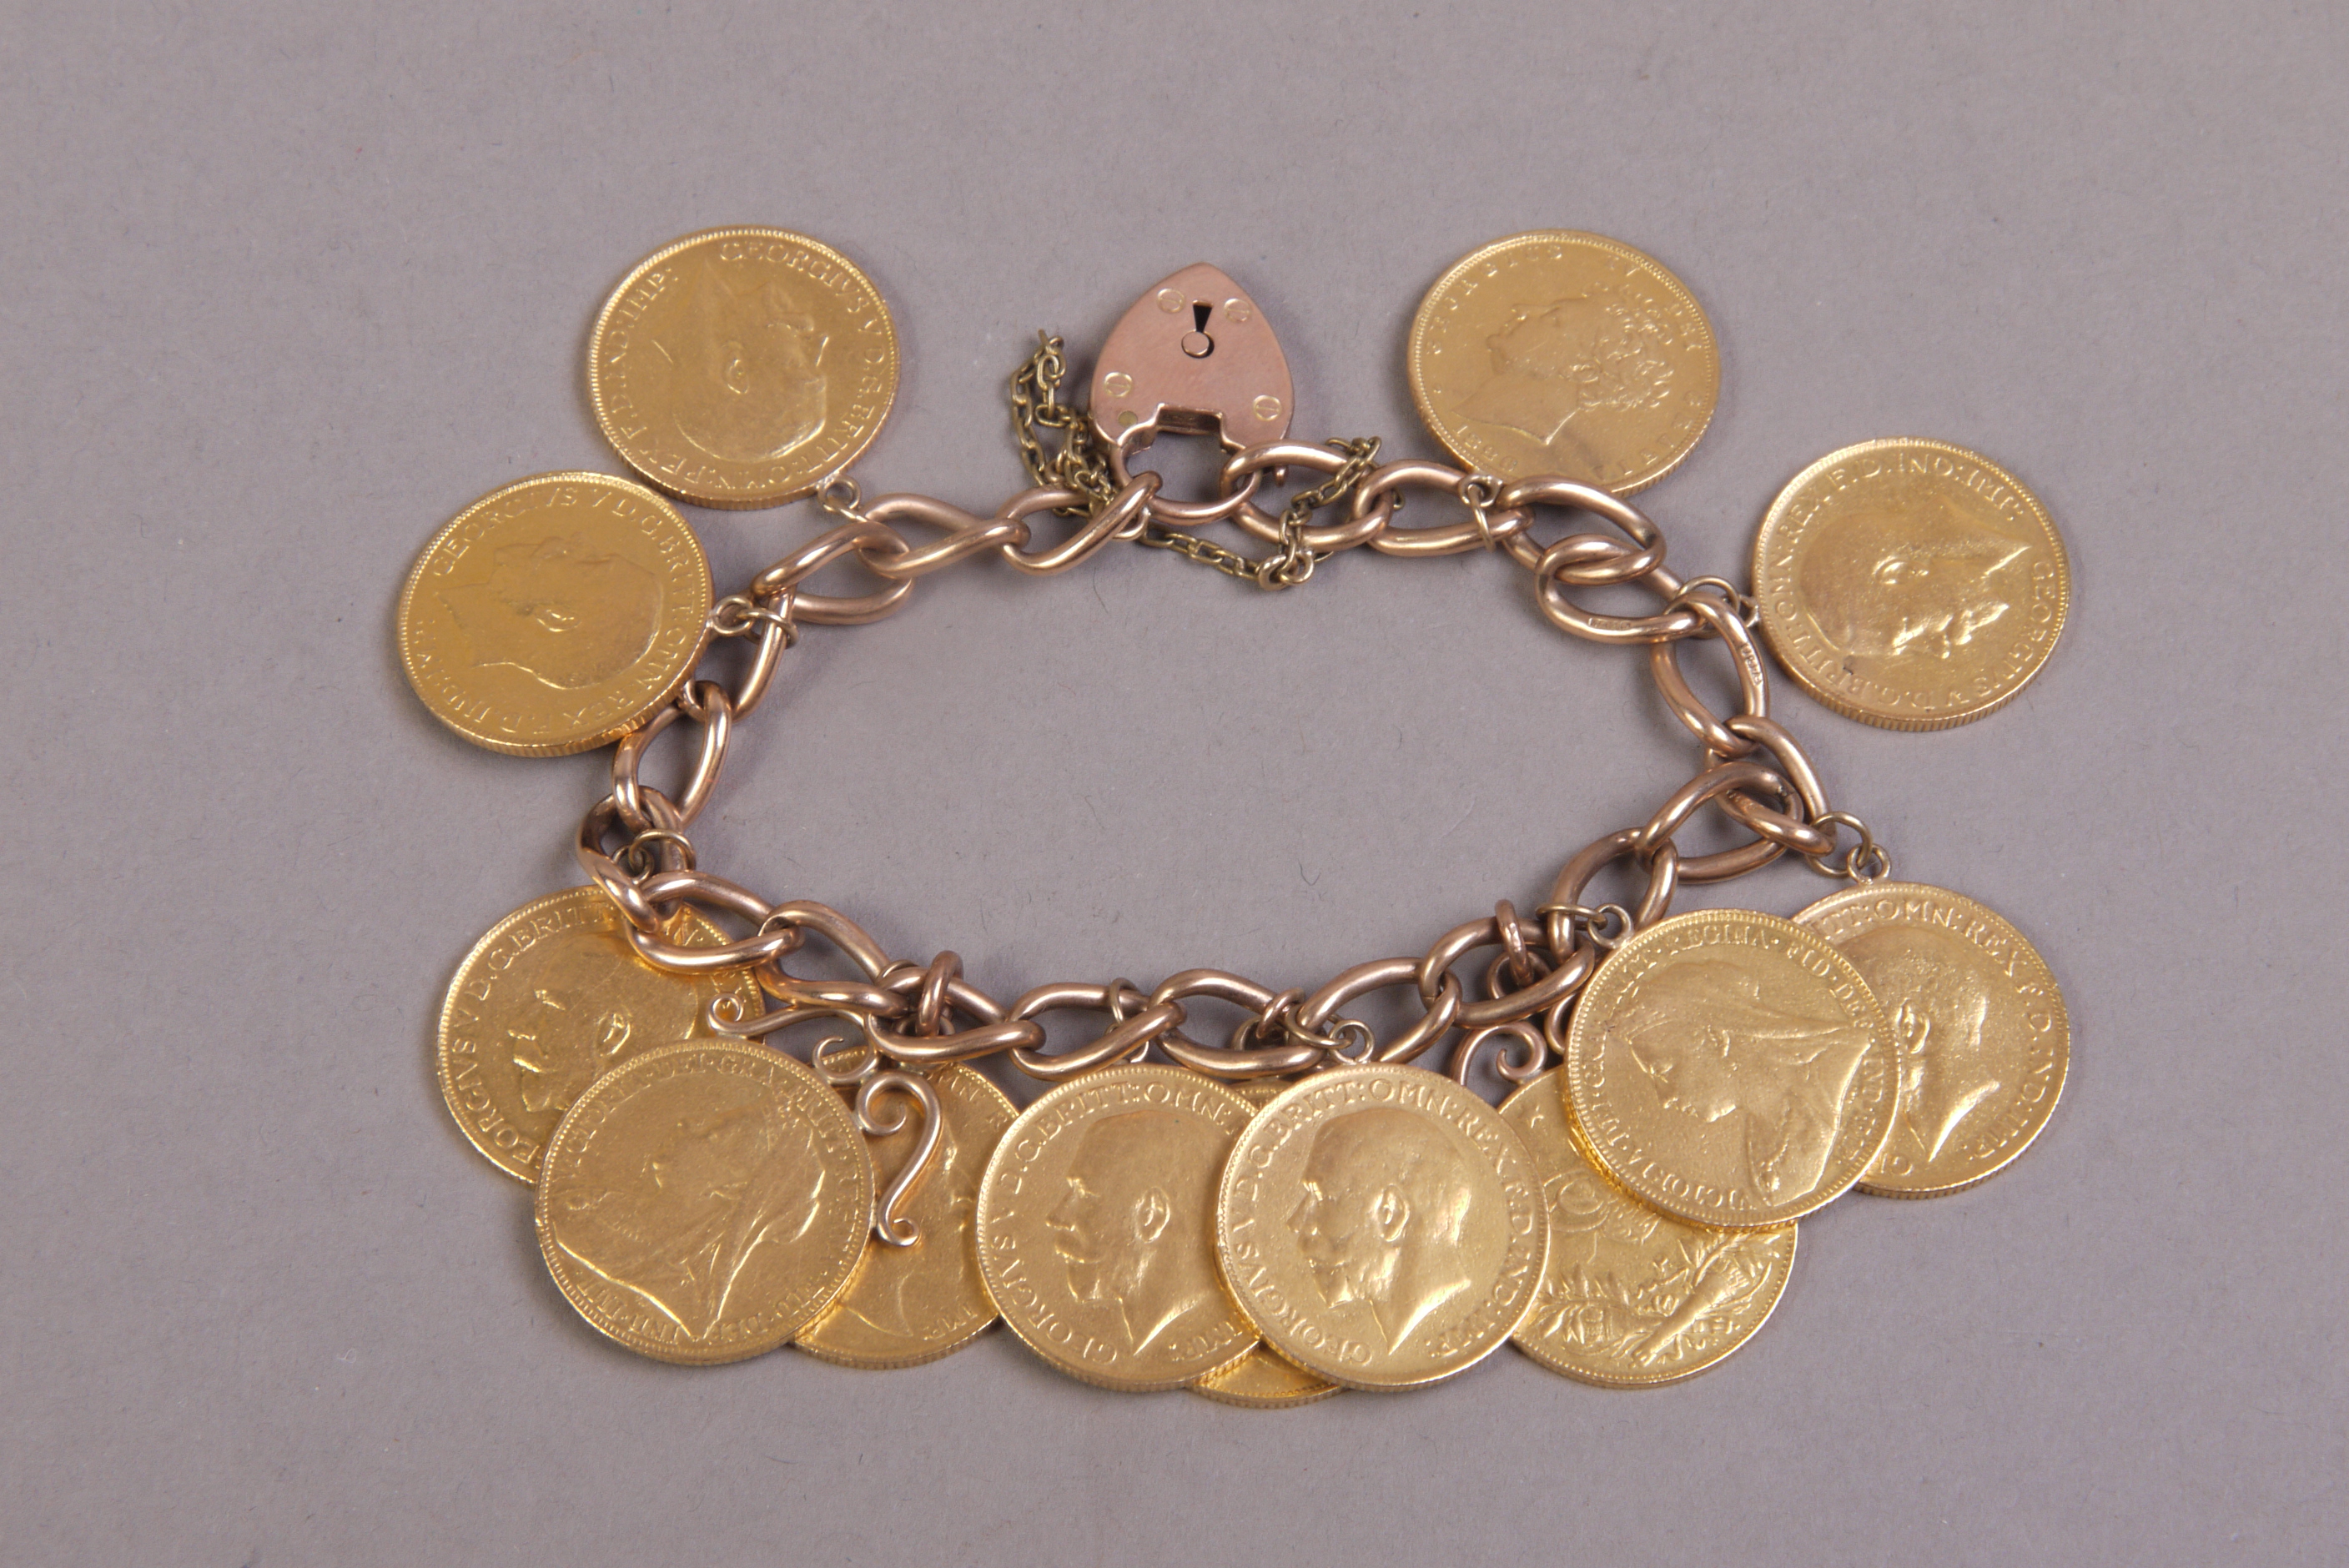 A GEORGE V COIN BRACELET of 9ct gold cur